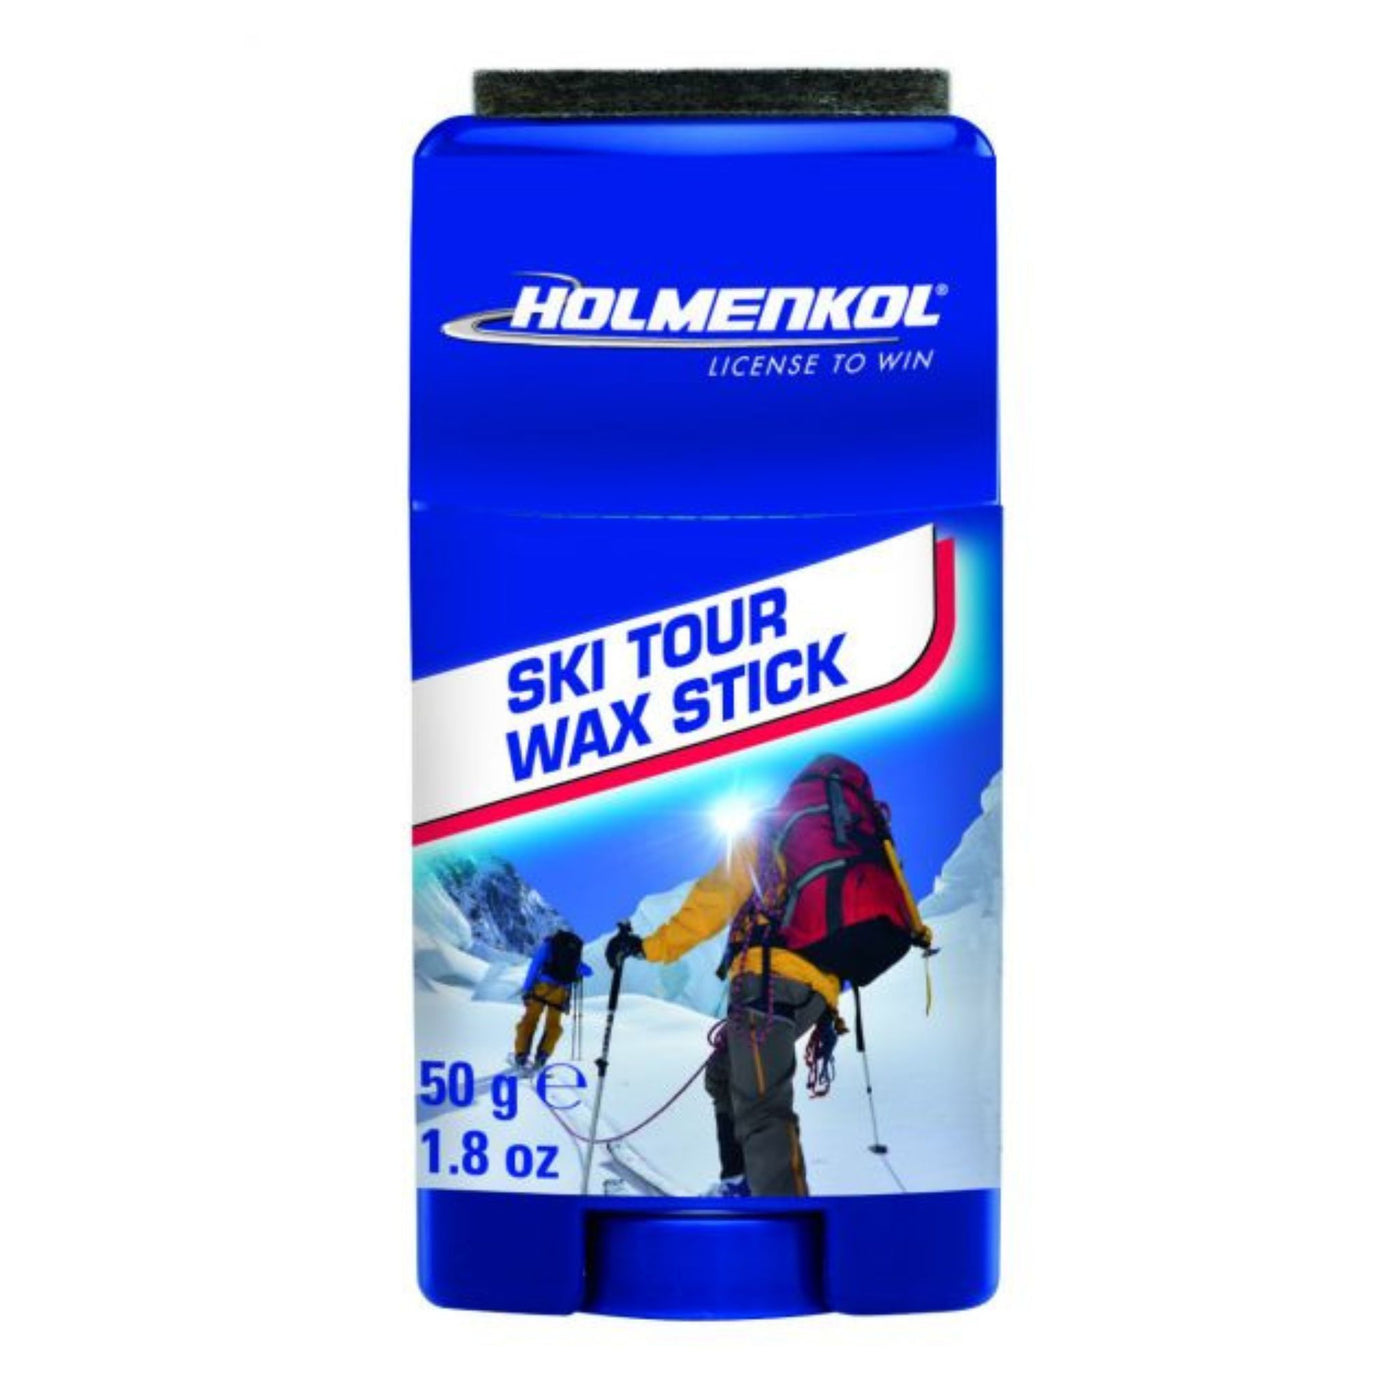 Holmenkol Ski Tour Wax Stick -50g SKI & SNOWBOARD WAX Holmenkol   